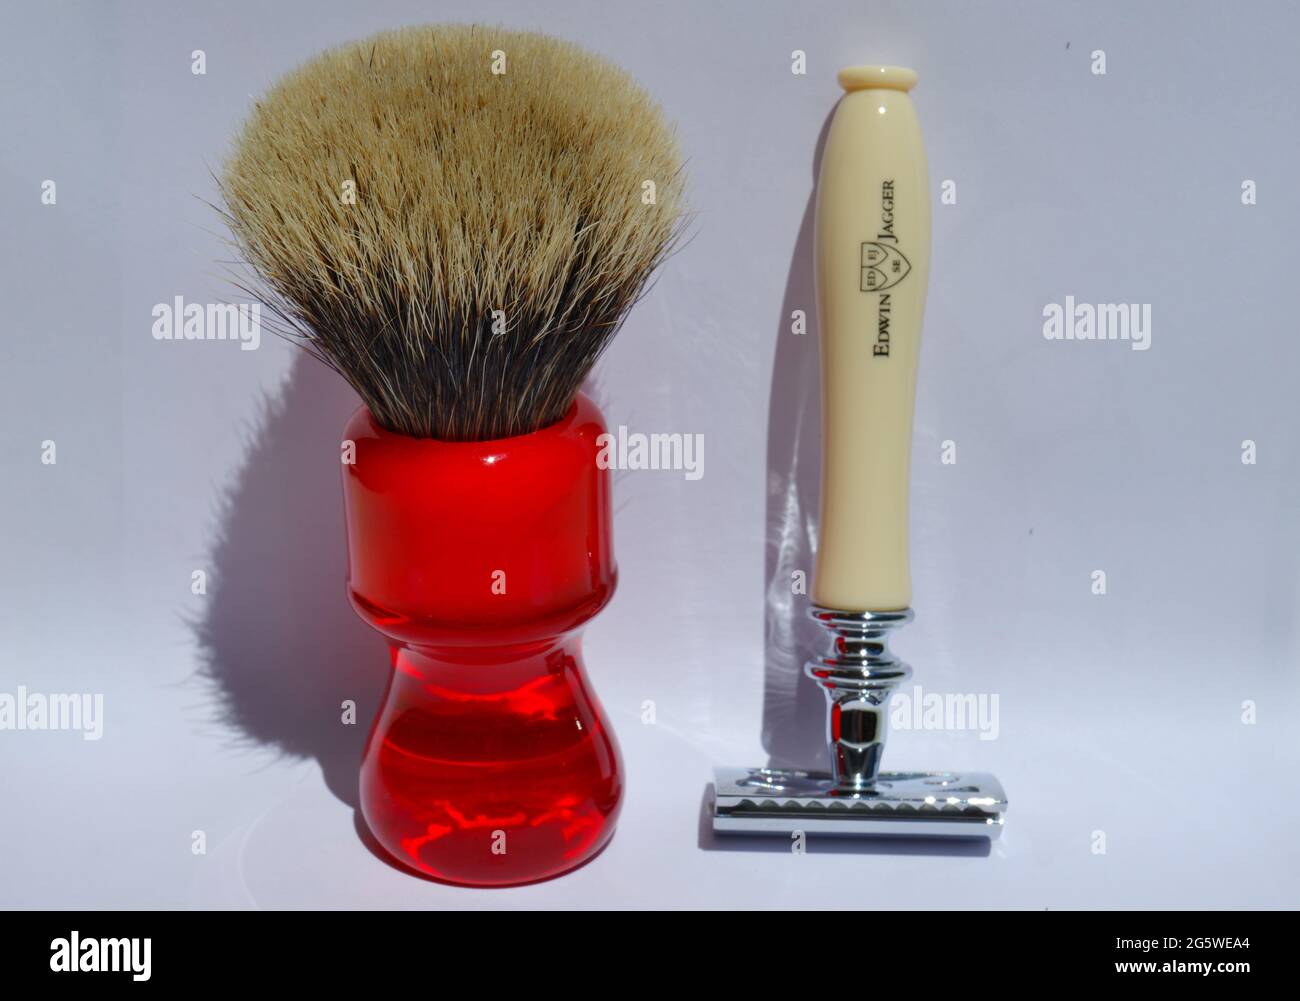 Edwin Jagger Chatsworth Imitation Ivory Double Edge Safety Razor with red pure badger Yaqi shaving brush Stock Photo